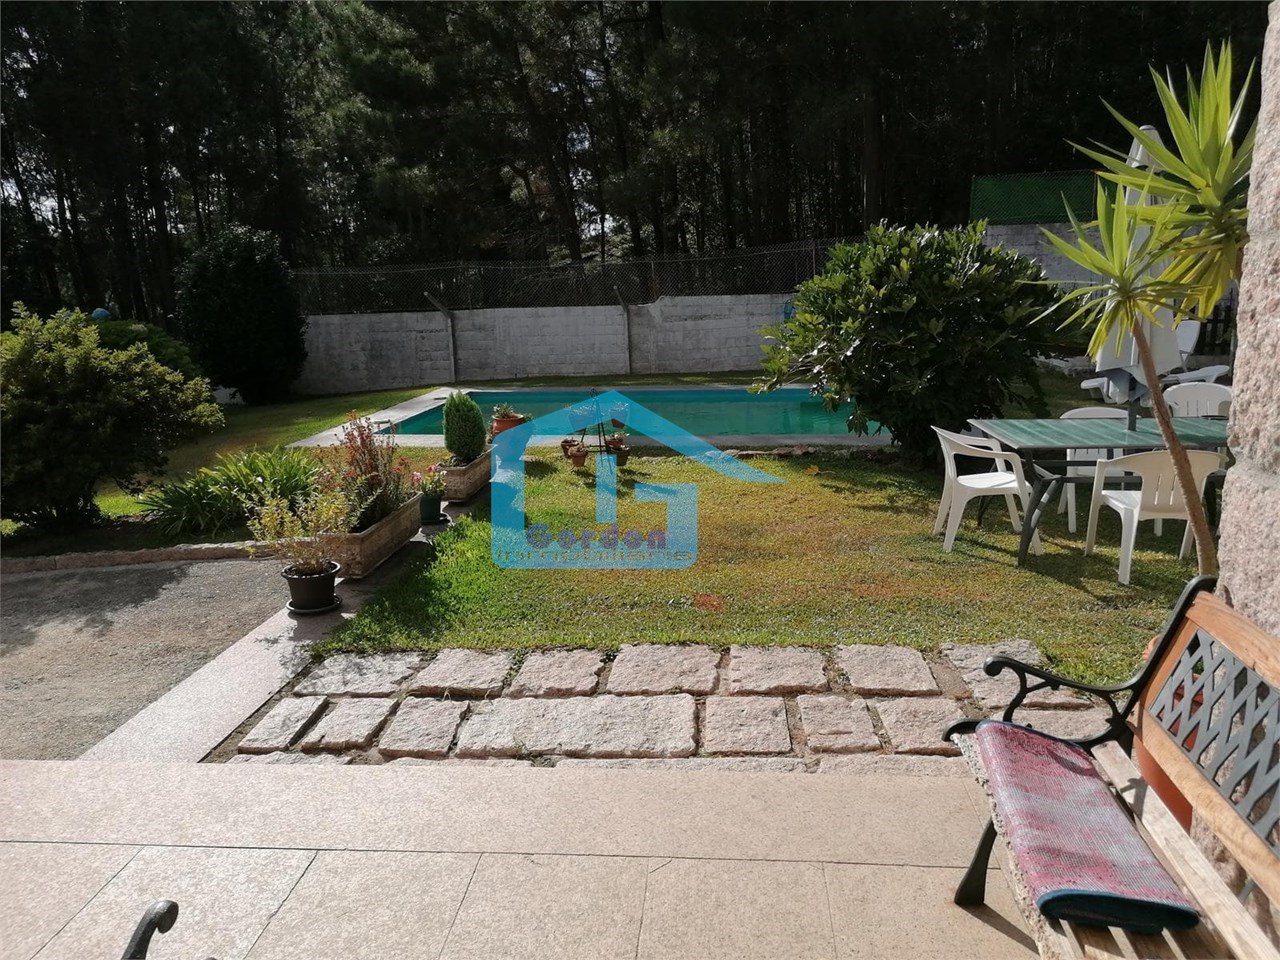 Foto 4 Meis: A7100: Chalet con piscina exterior, jardines... finca de 1.300 m2...